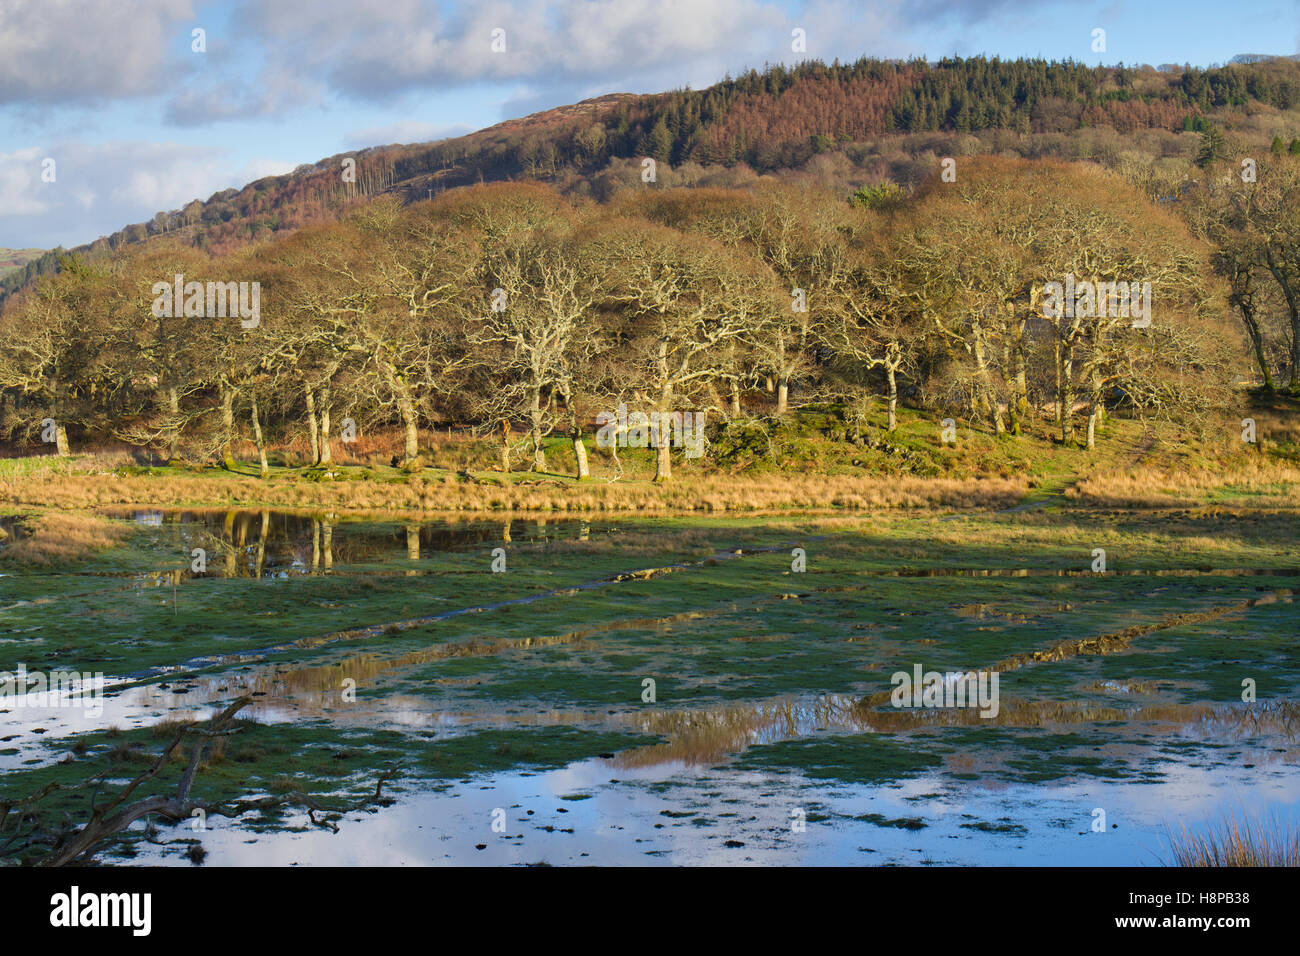 L'habitat. Marais d'eau douce et de bois. RSPB Ynys Hir réserver. Ceredigion, pays de Galles. Janvier. Banque D'Images